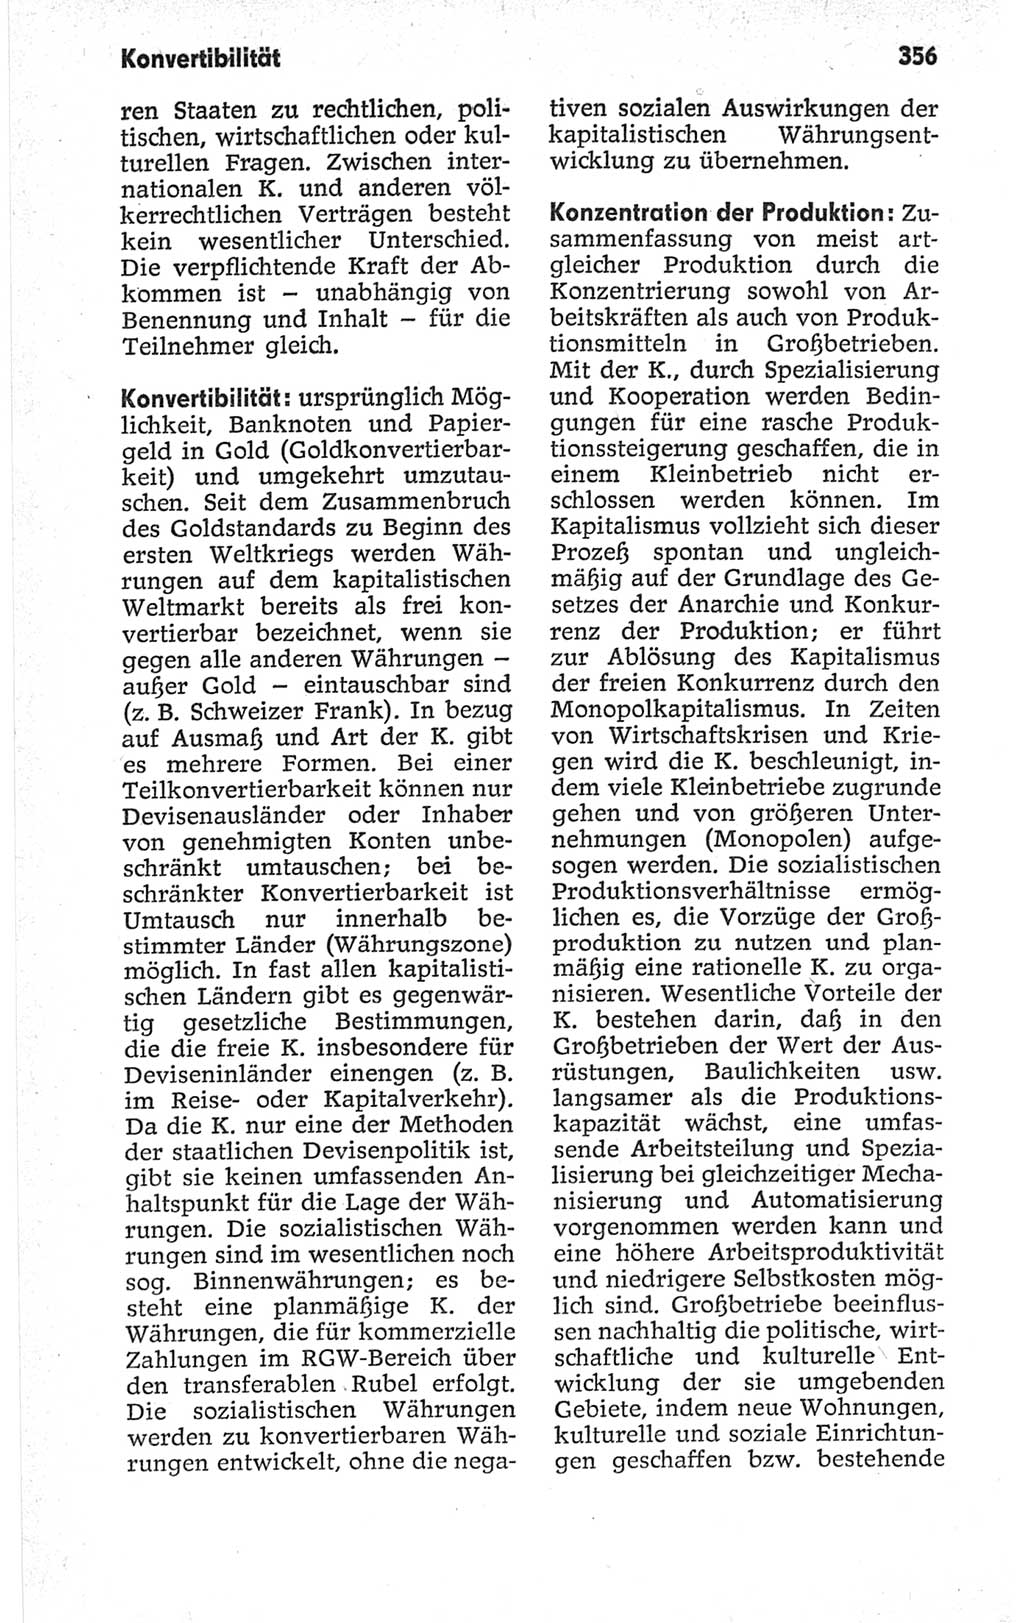 Kleines politisches Wörterbuch [Deutsche Demokratische Republik (DDR)] 1967, Seite 356 (Kl. pol. Wb. DDR 1967, S. 356)